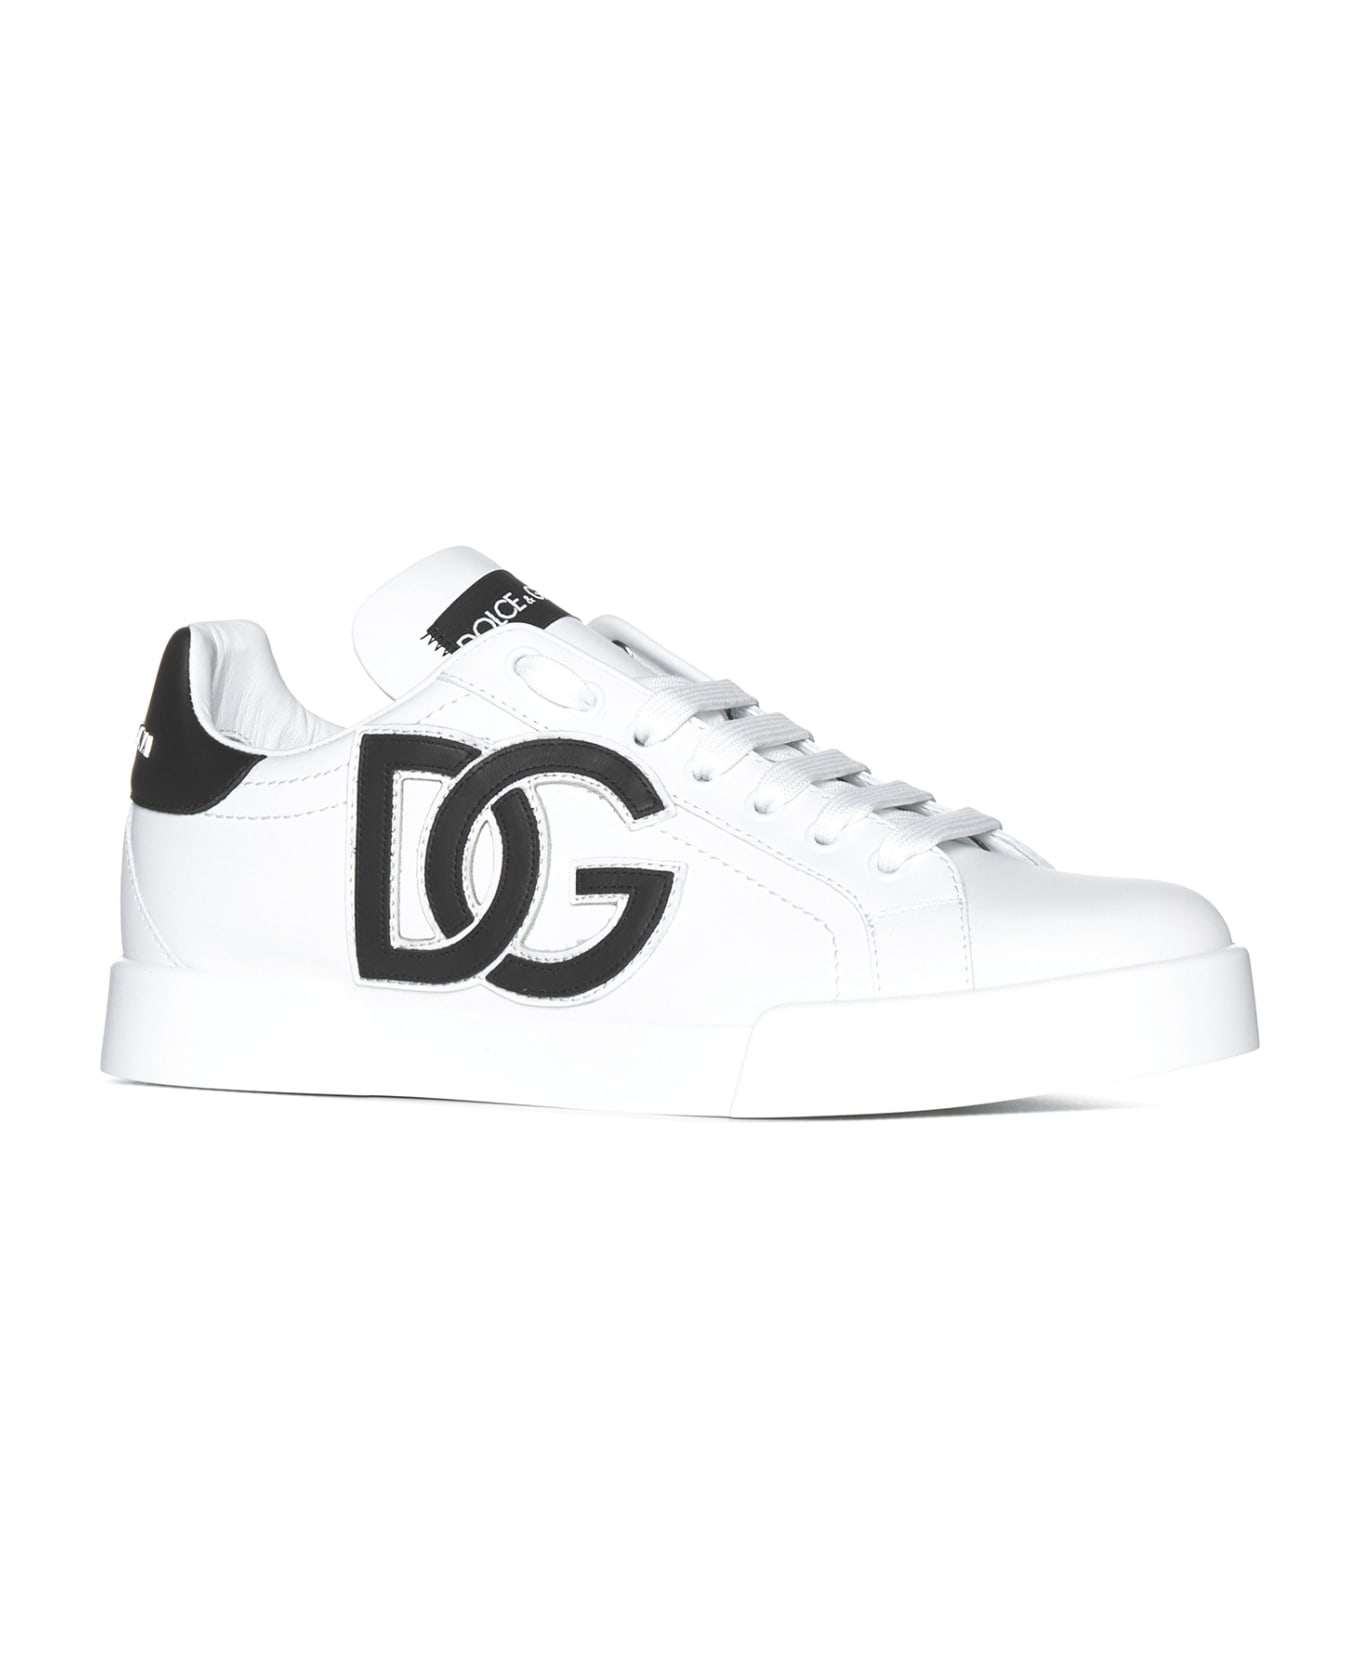 Dolce & Gabbana Portofino Sneakers - Bianco/nero